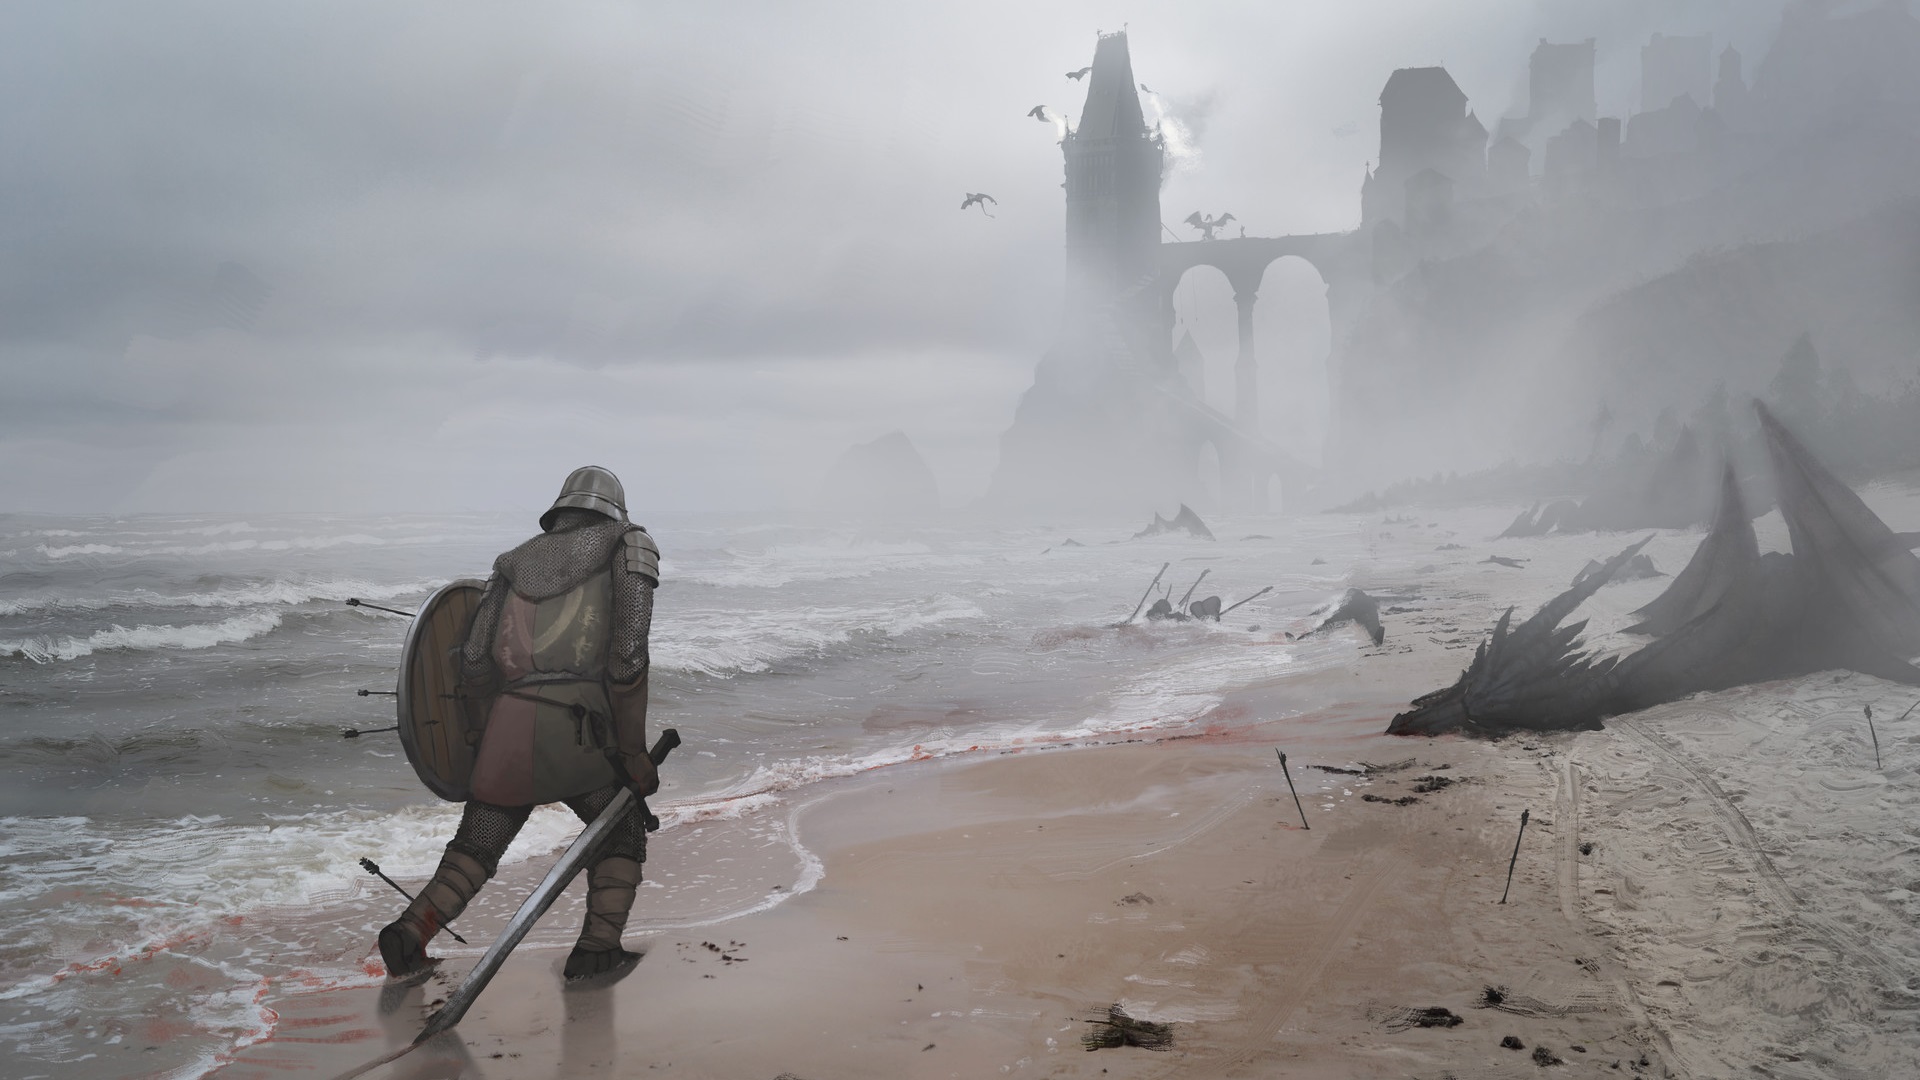 dragon mist sea castle arrows Game of Thrones sword